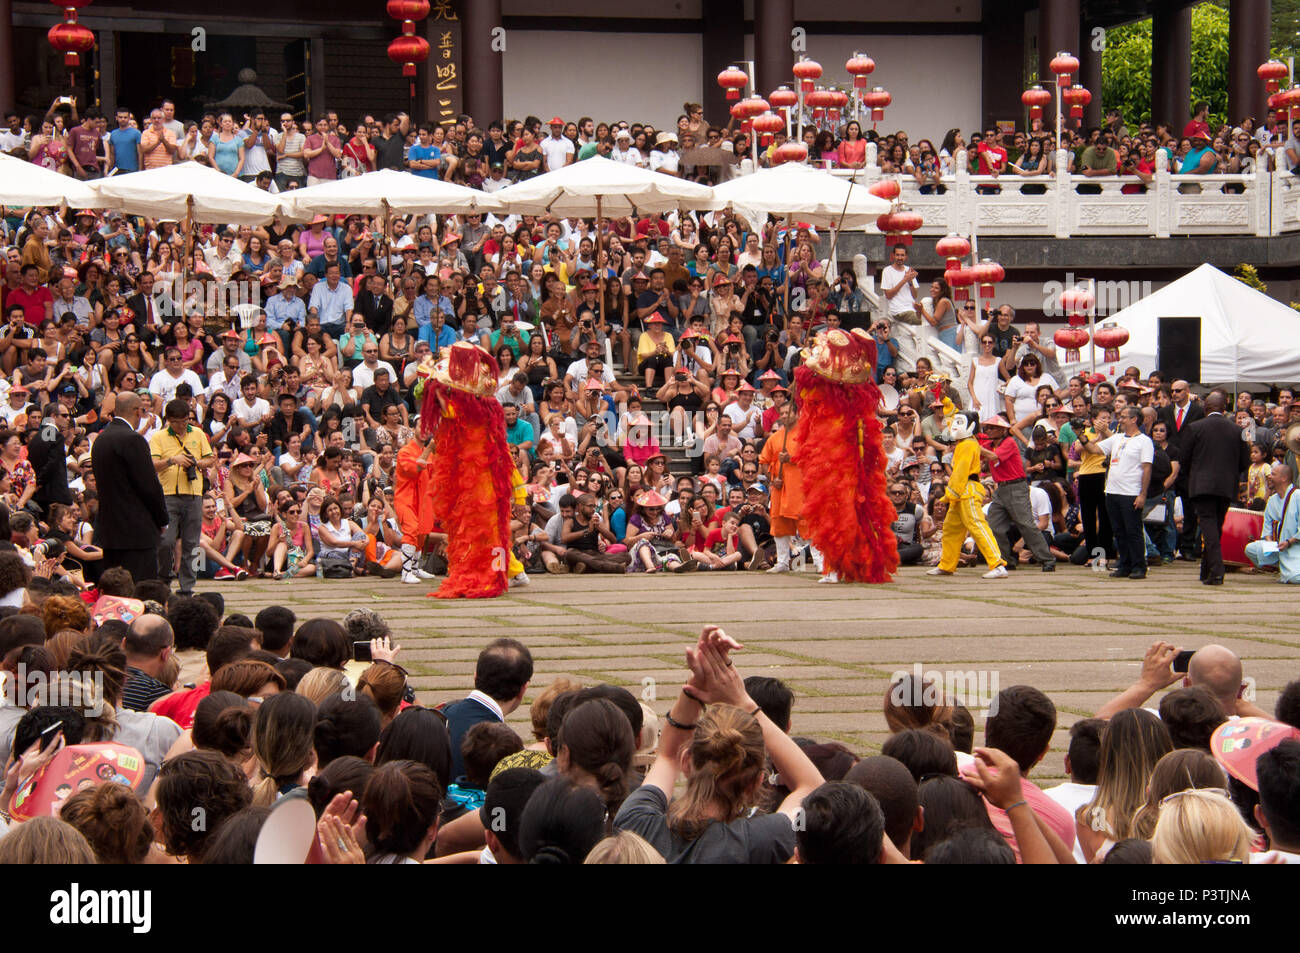 COTIA, SP - 21.02.2016: TEMPLO ZU LAI - Apresentação da Dança do Leão durante a celebração do Ano Novo Chinês no templo budista Zu Lai. (Foto: Daniela Maria / Fotoarena) Stock Photo